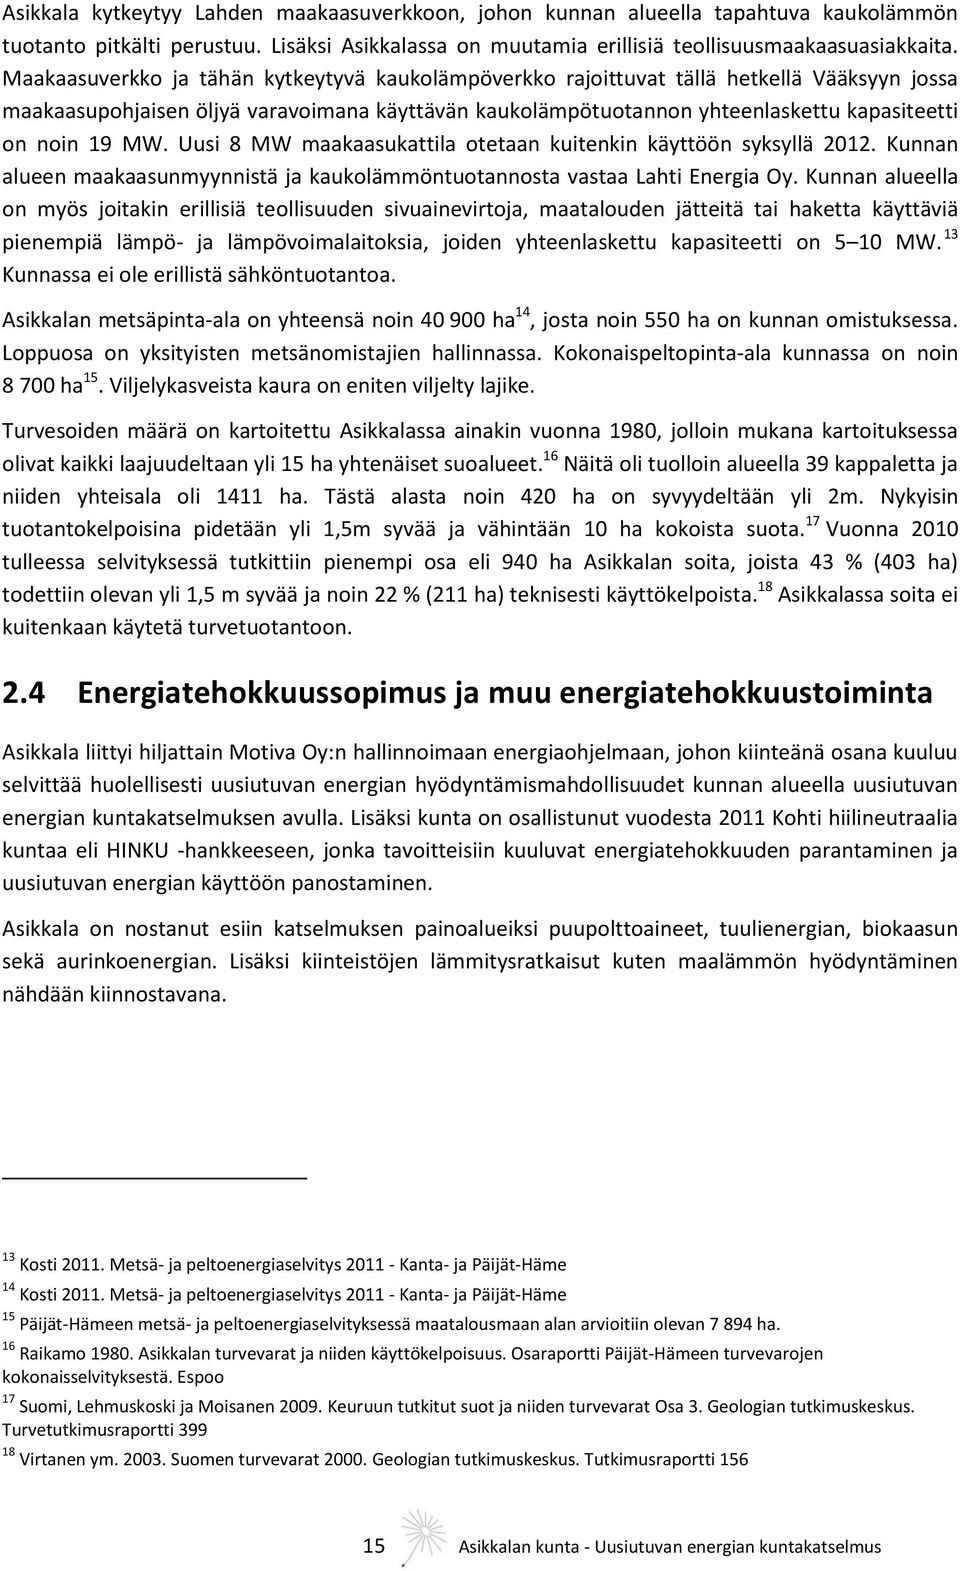 MW. Uusi 8 MW maakaasukattila otetaan kuitenkin käyttöön syksyllä 2012. Kunnan alueen maakaasunmyynnistä ja kaukolämmöntuotannosta vastaa Lahti Energia Oy.